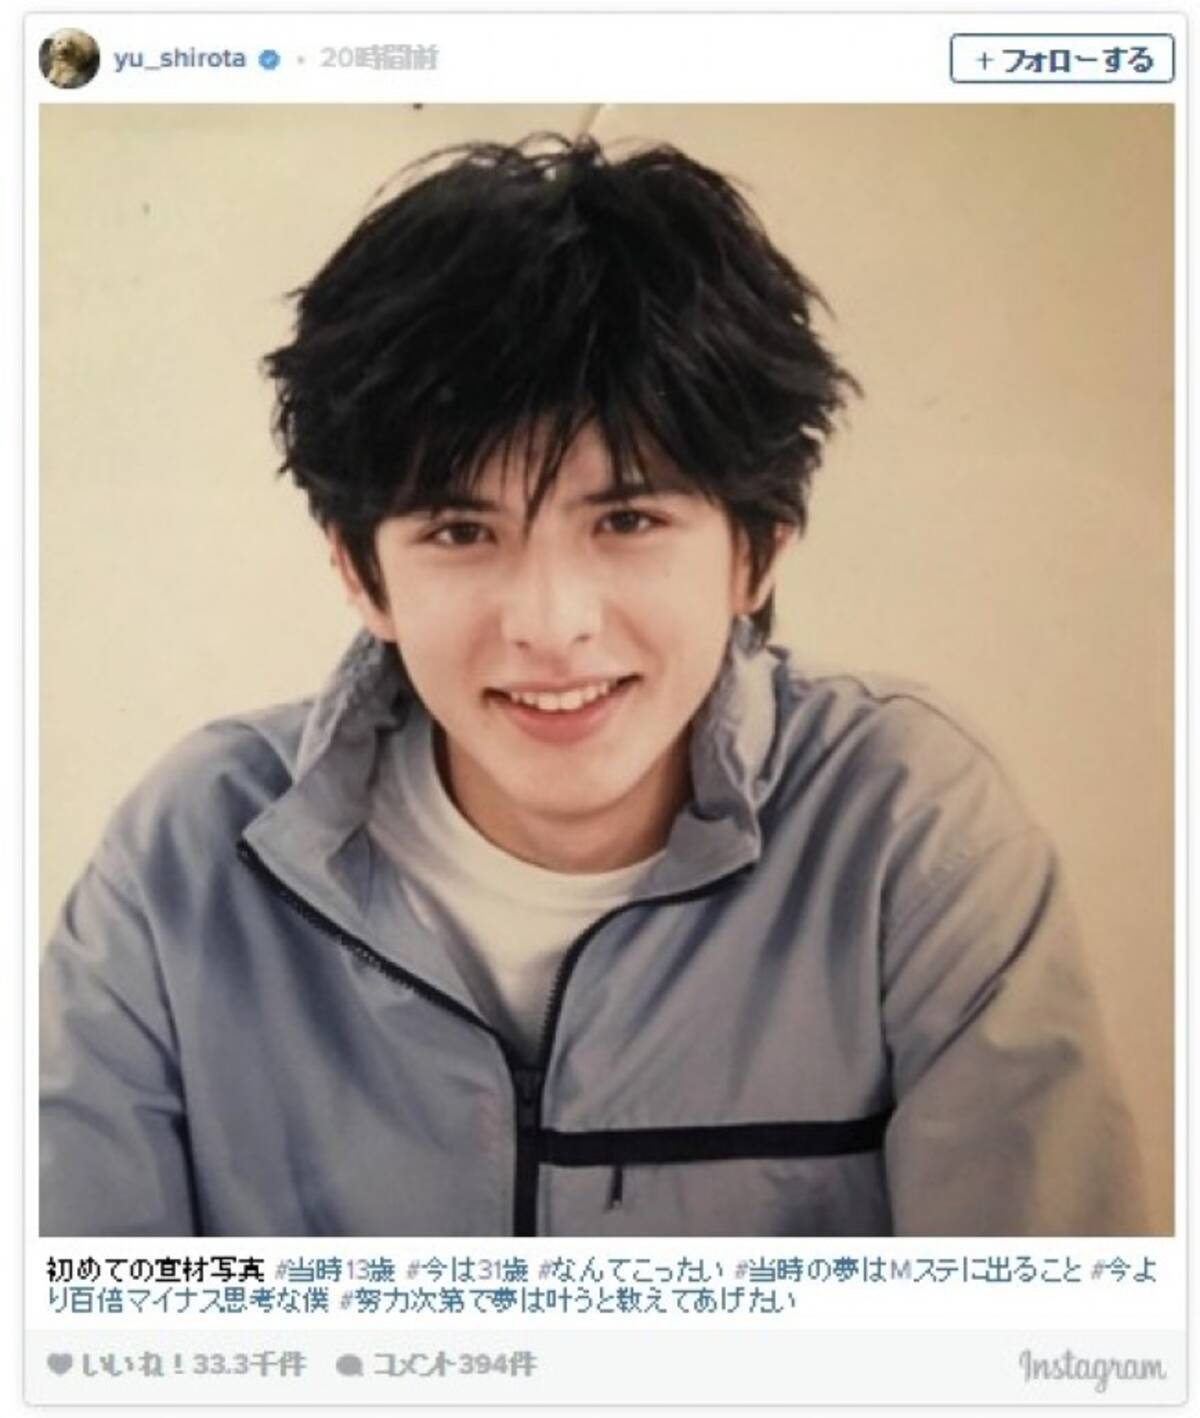 城田優 13歳 初めての宣材写真 に反響 かわいすぎる 17年1月14日 エキサイトニュース